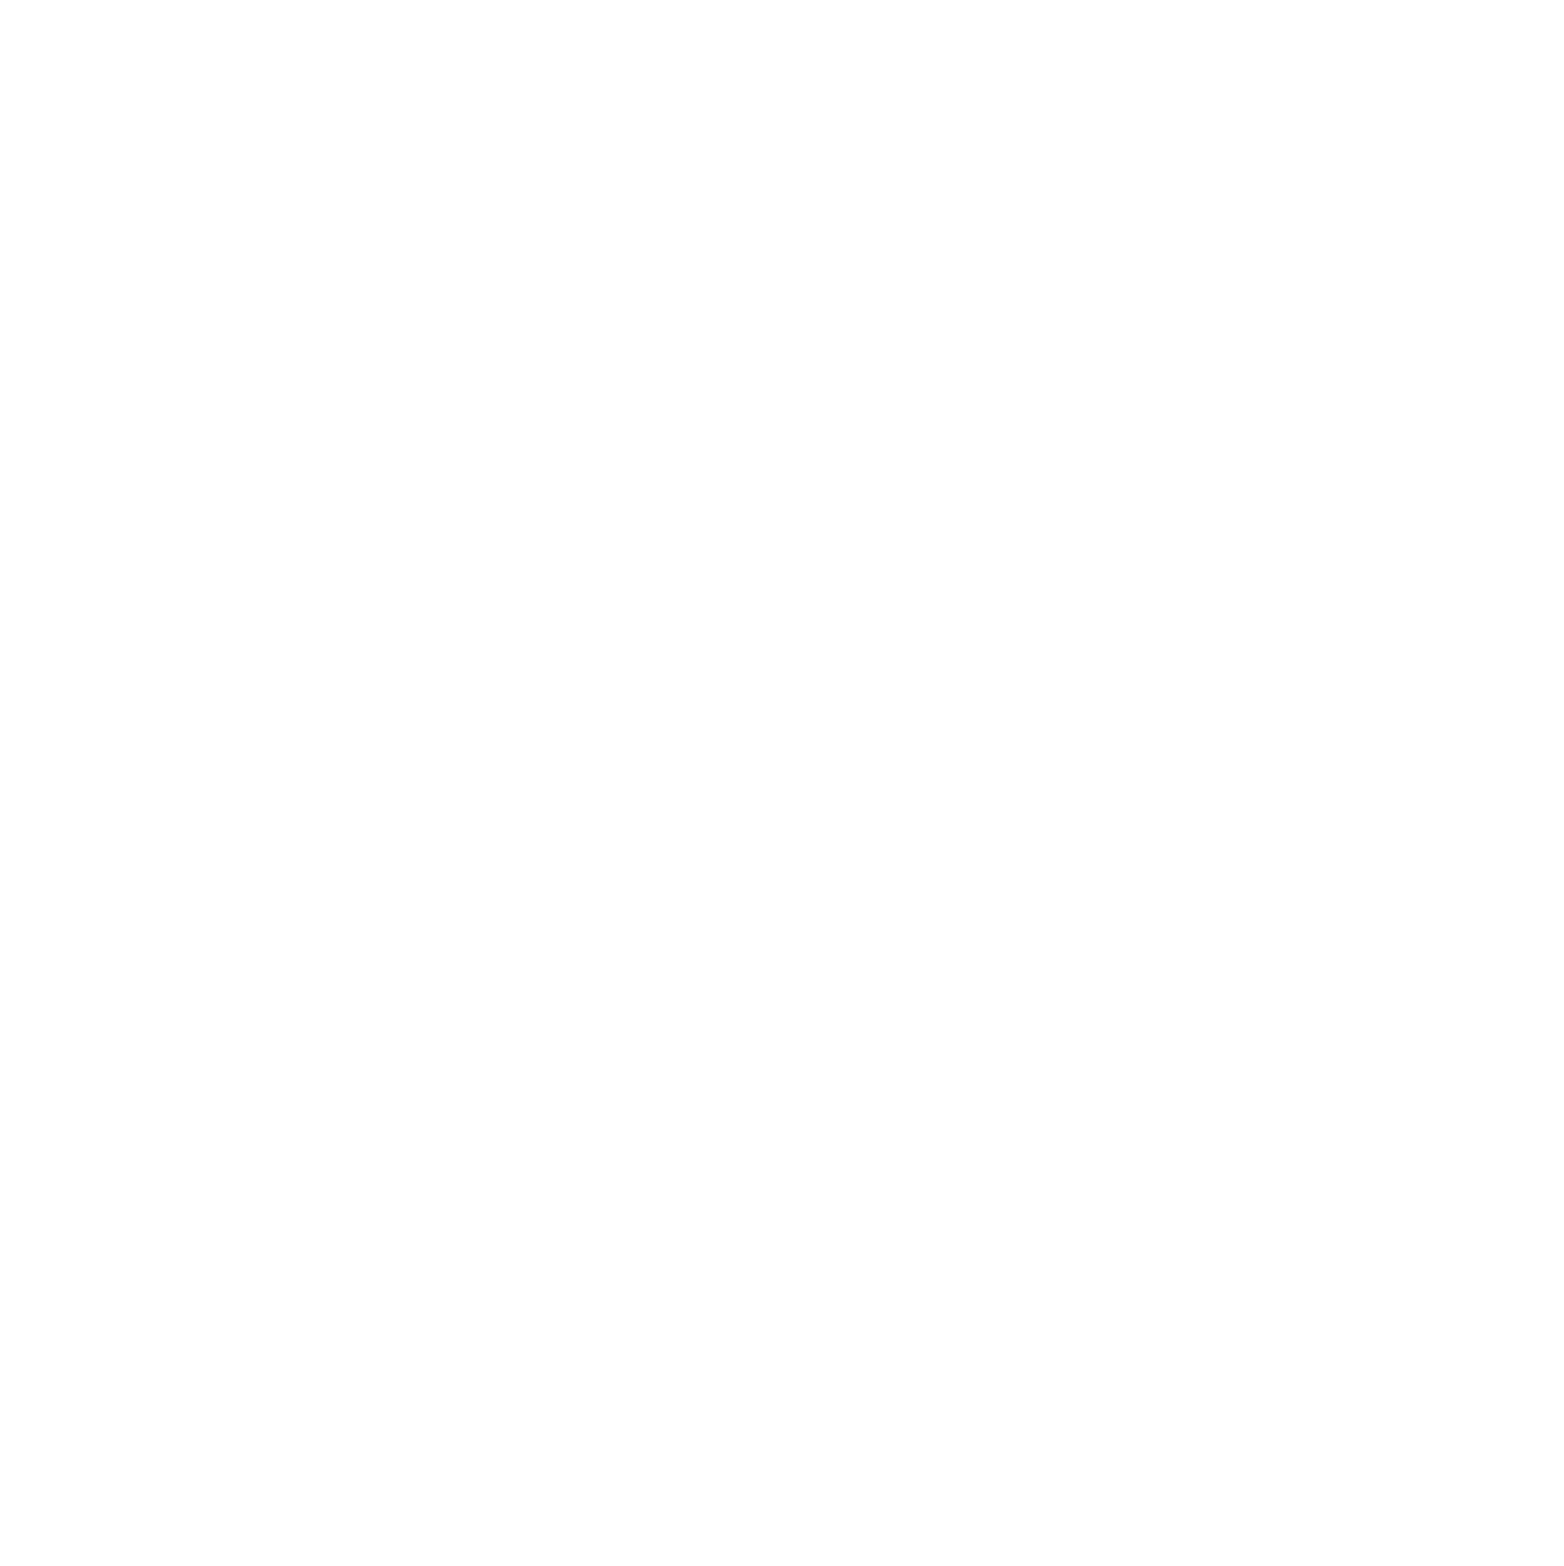 Truist Financial logo pour fonds sombres (PNG transparent)